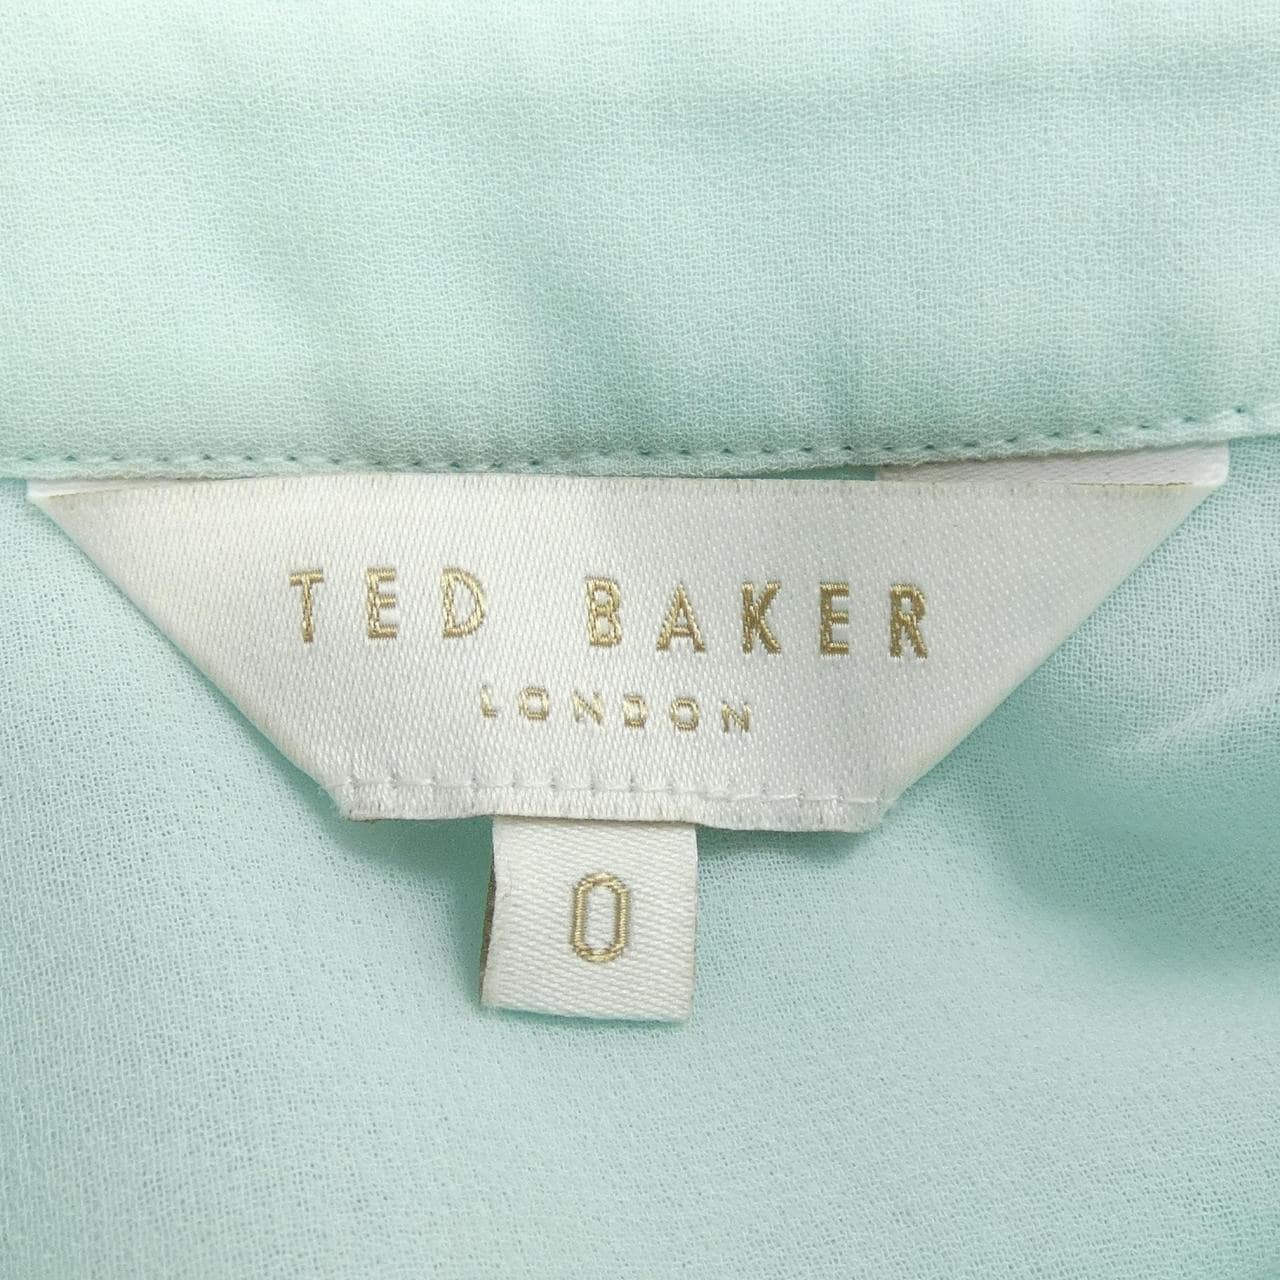 テッドベーカー TED BAKER シャツ